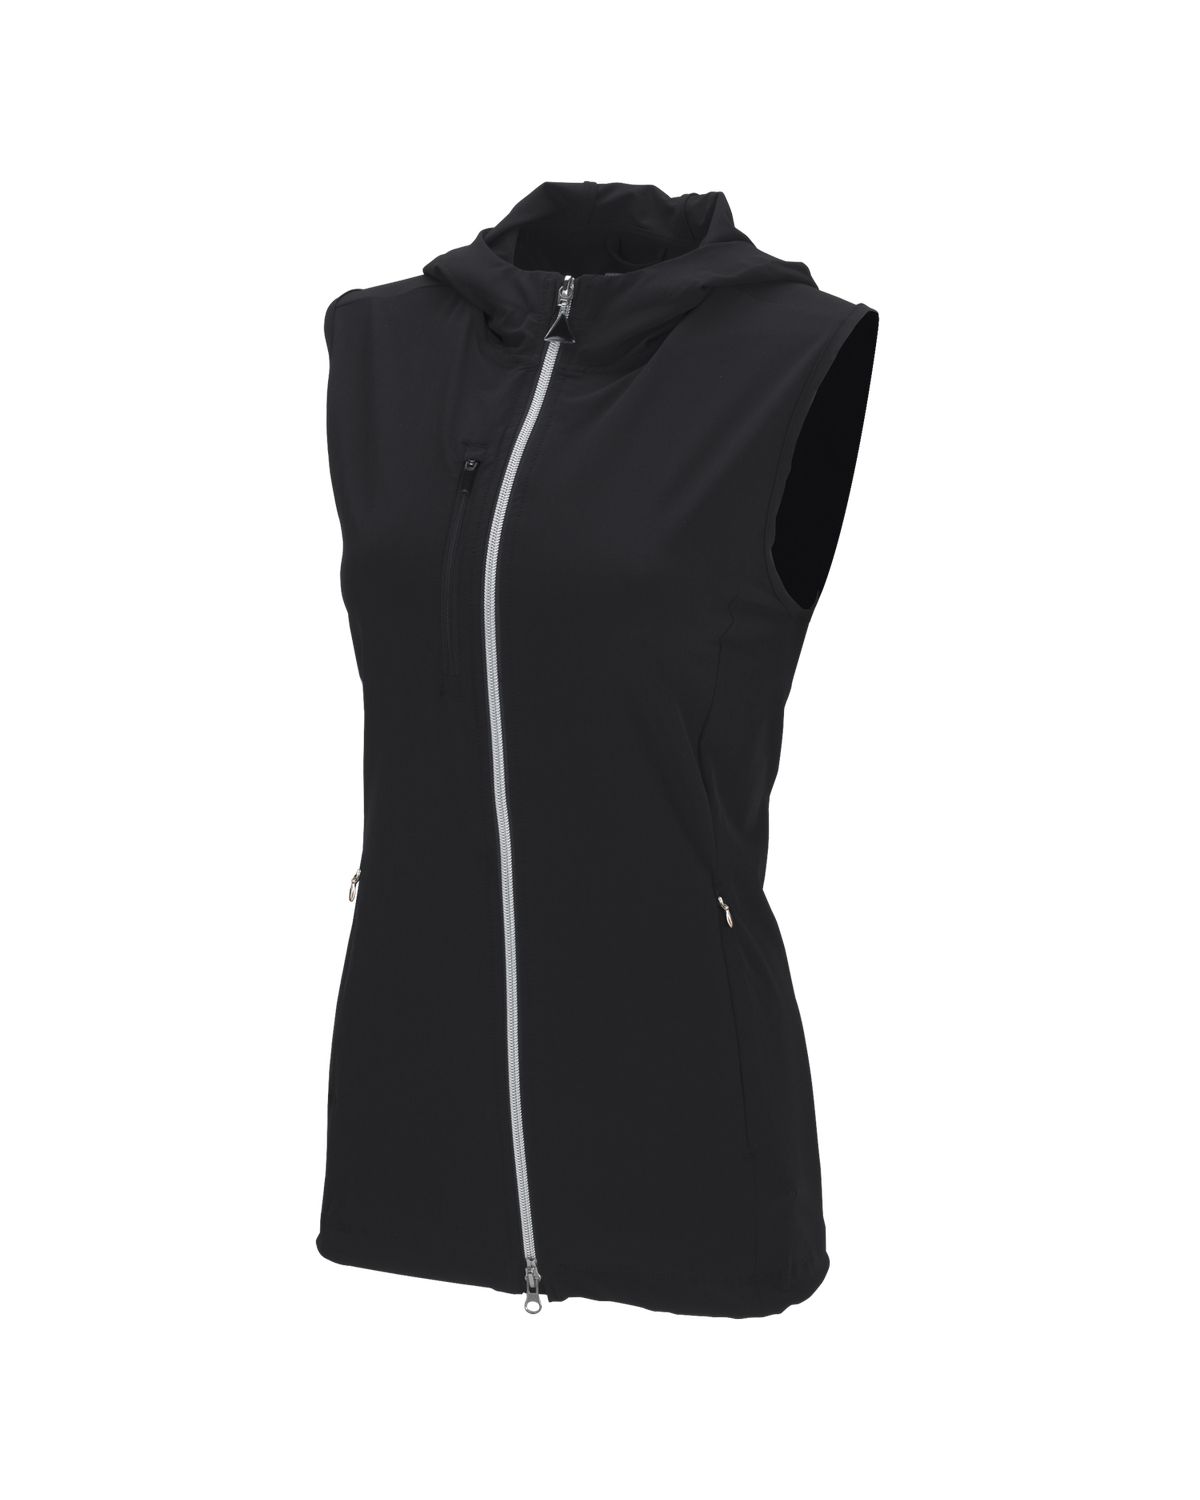 'Greg Norman WNS0J360 Women's Windbreaker Full-Zip Hooded Vest'